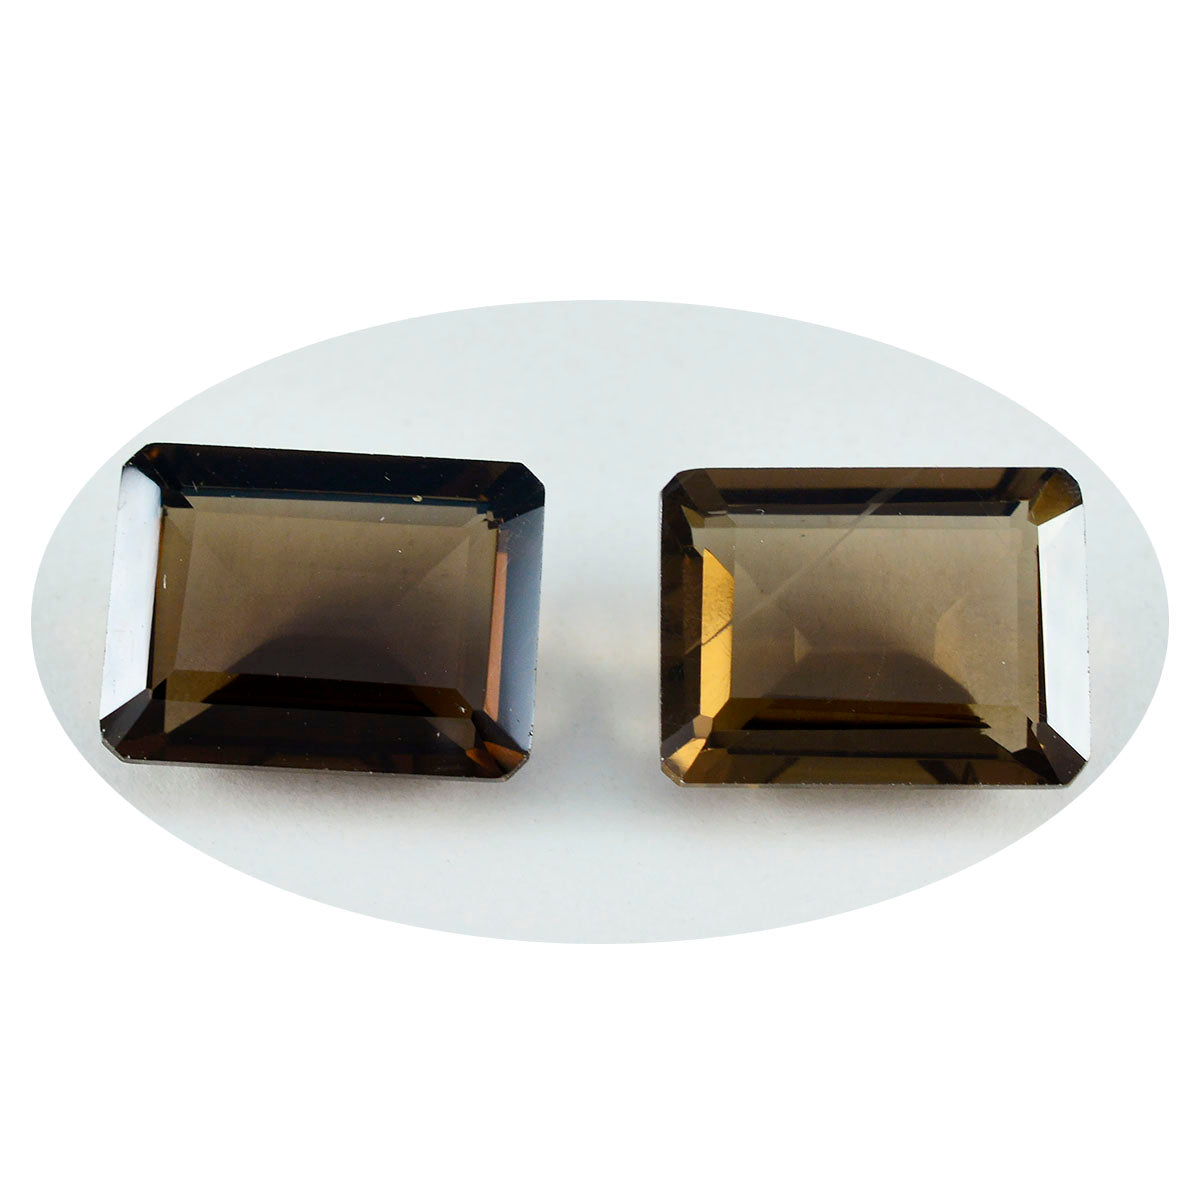 riyogems 1 шт. натуральный коричневый дымчатый кварц ограненный 10x12 мм восьмиугольной формы превосходное качество свободный камень